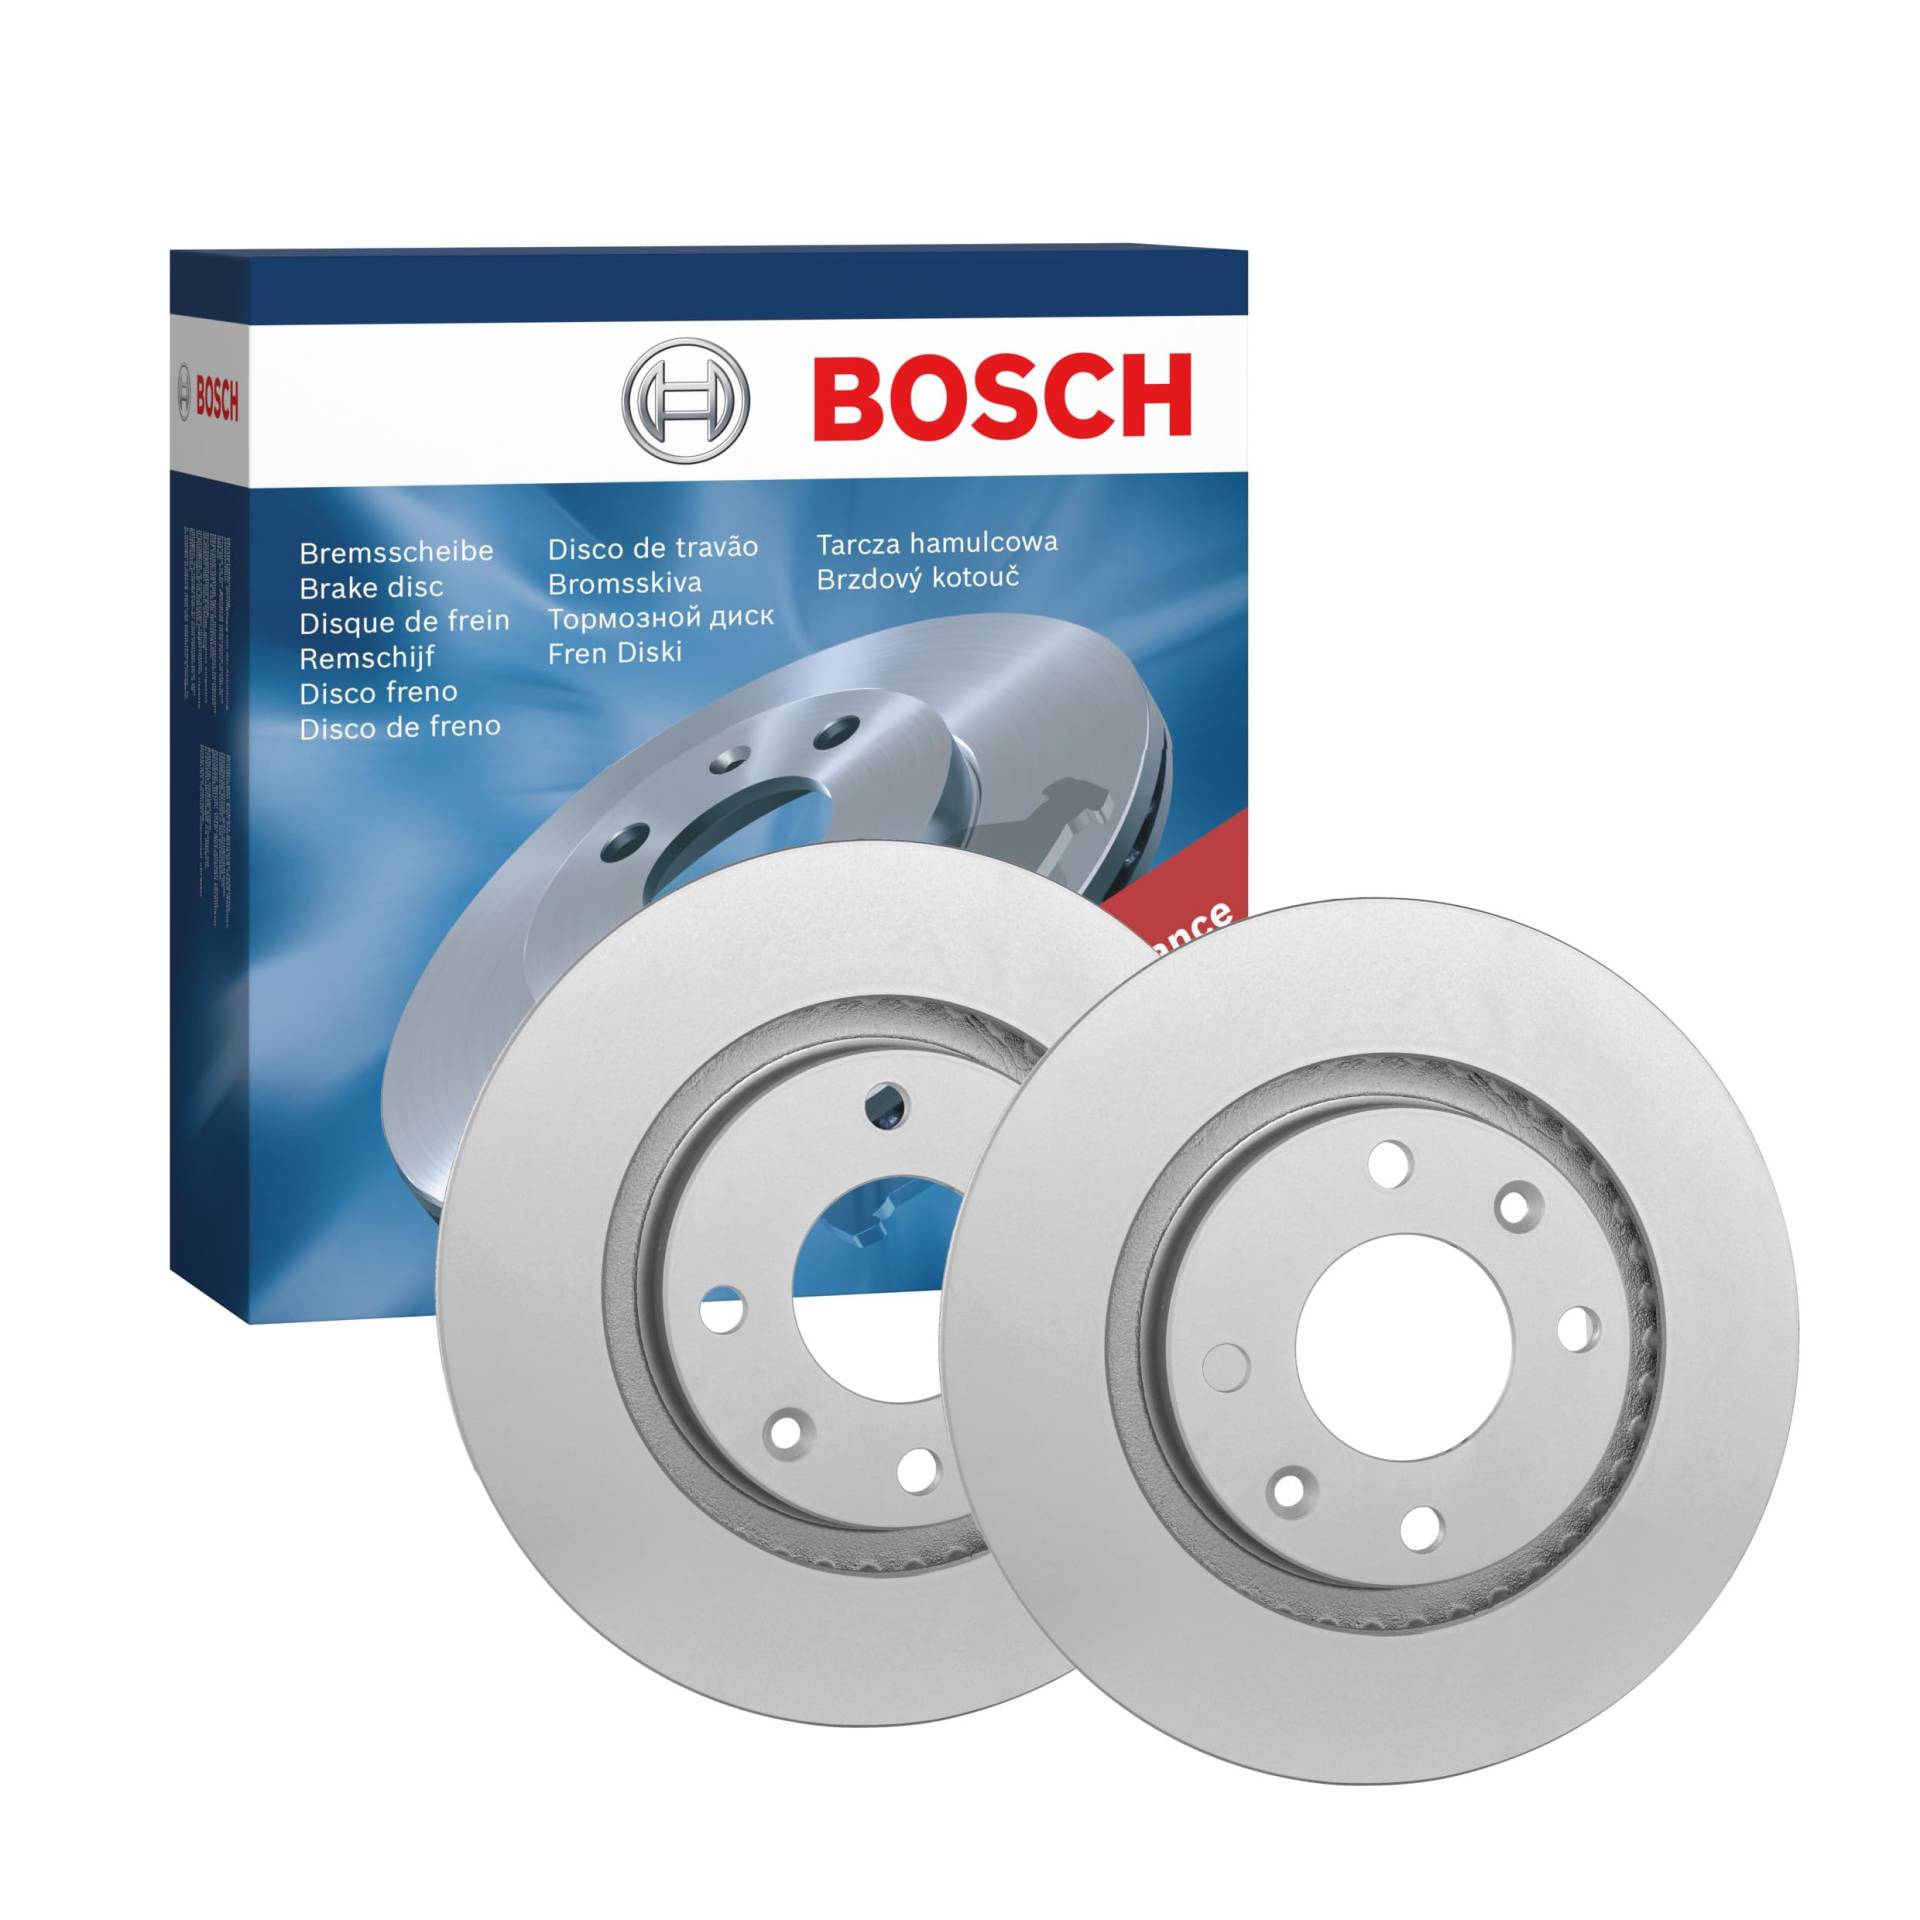 Bosch BD536 Bremsscheiben - Vorderachse - ECE-R90 Zertifizierung - zwei Bremsscheiben pro Set von Bosch Automotive